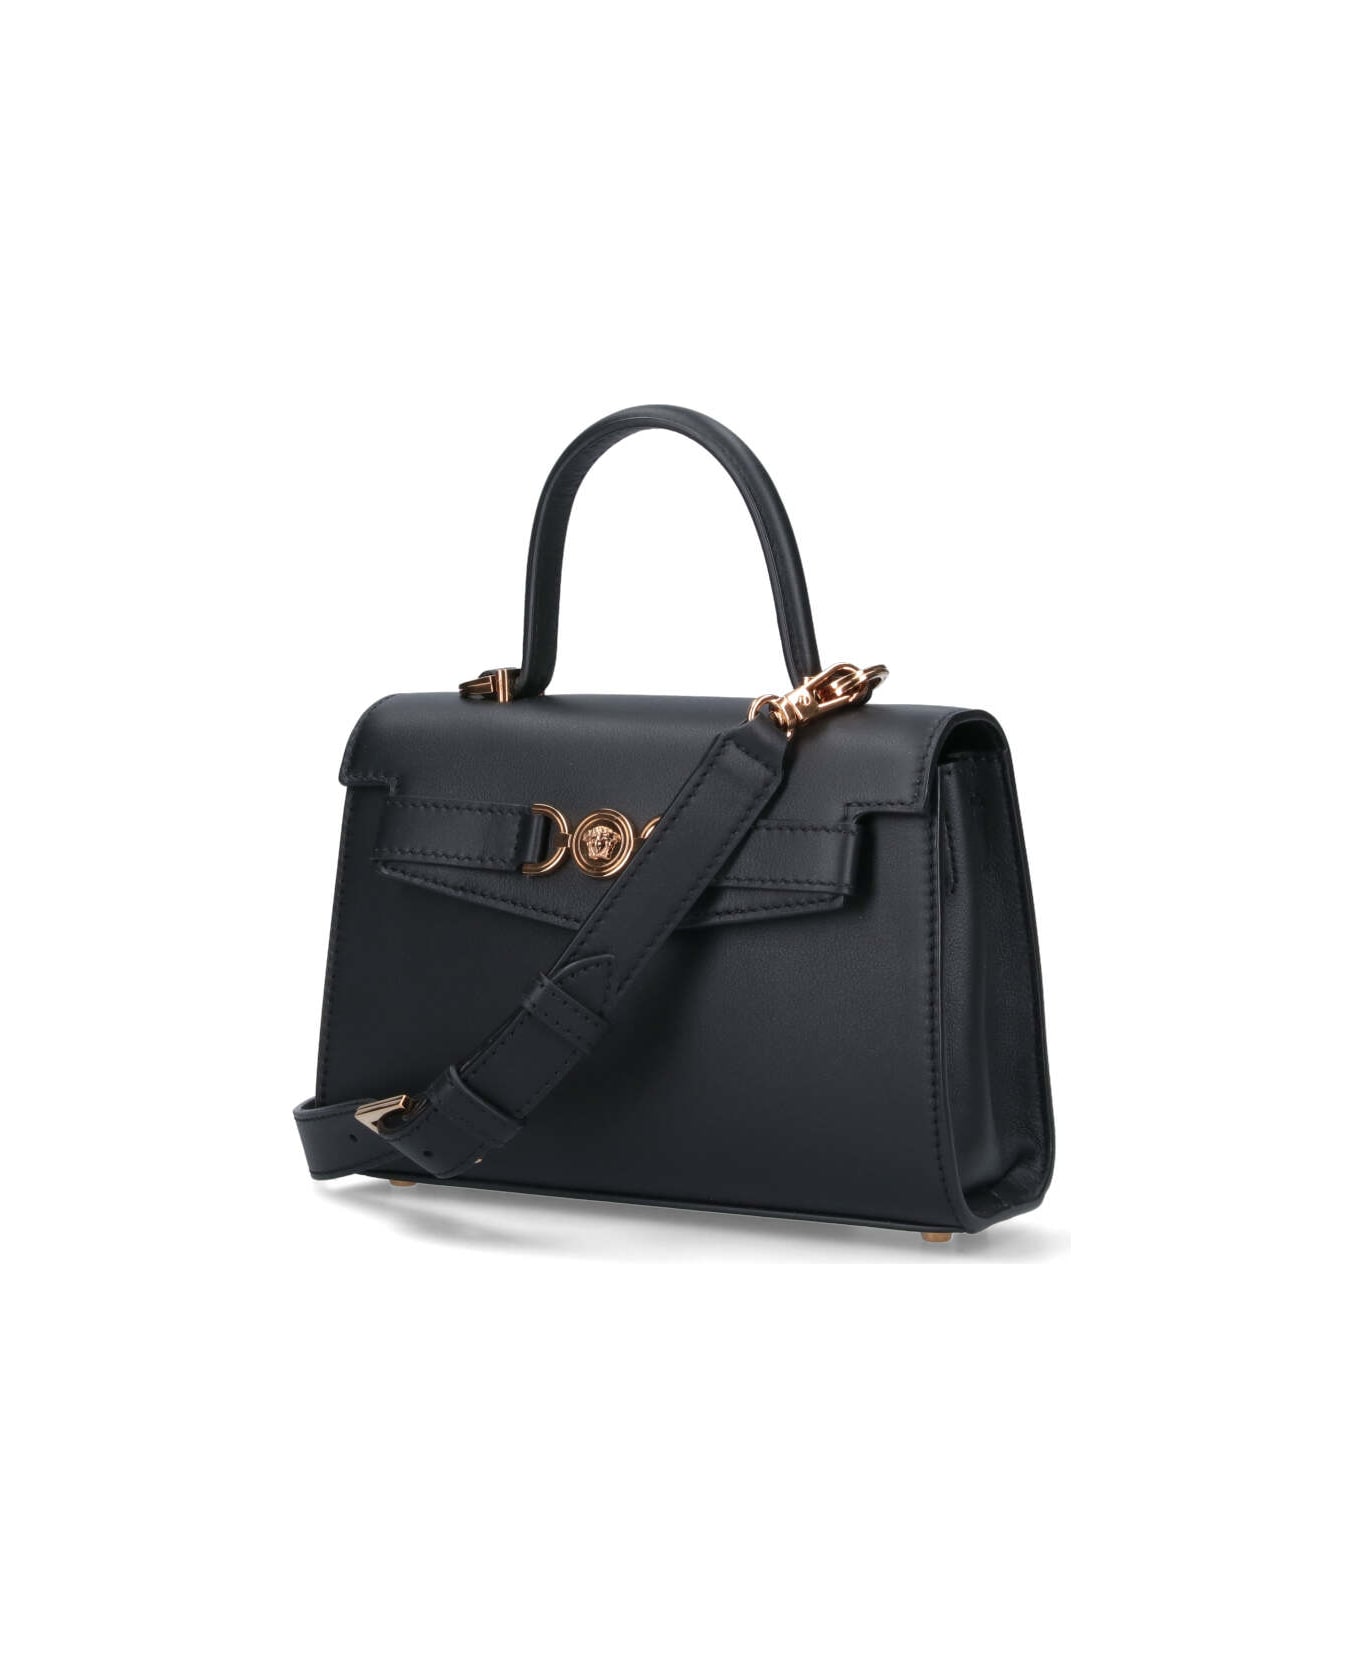 Versace 'medusa '95' Small Handbag - Black   トートバッグ